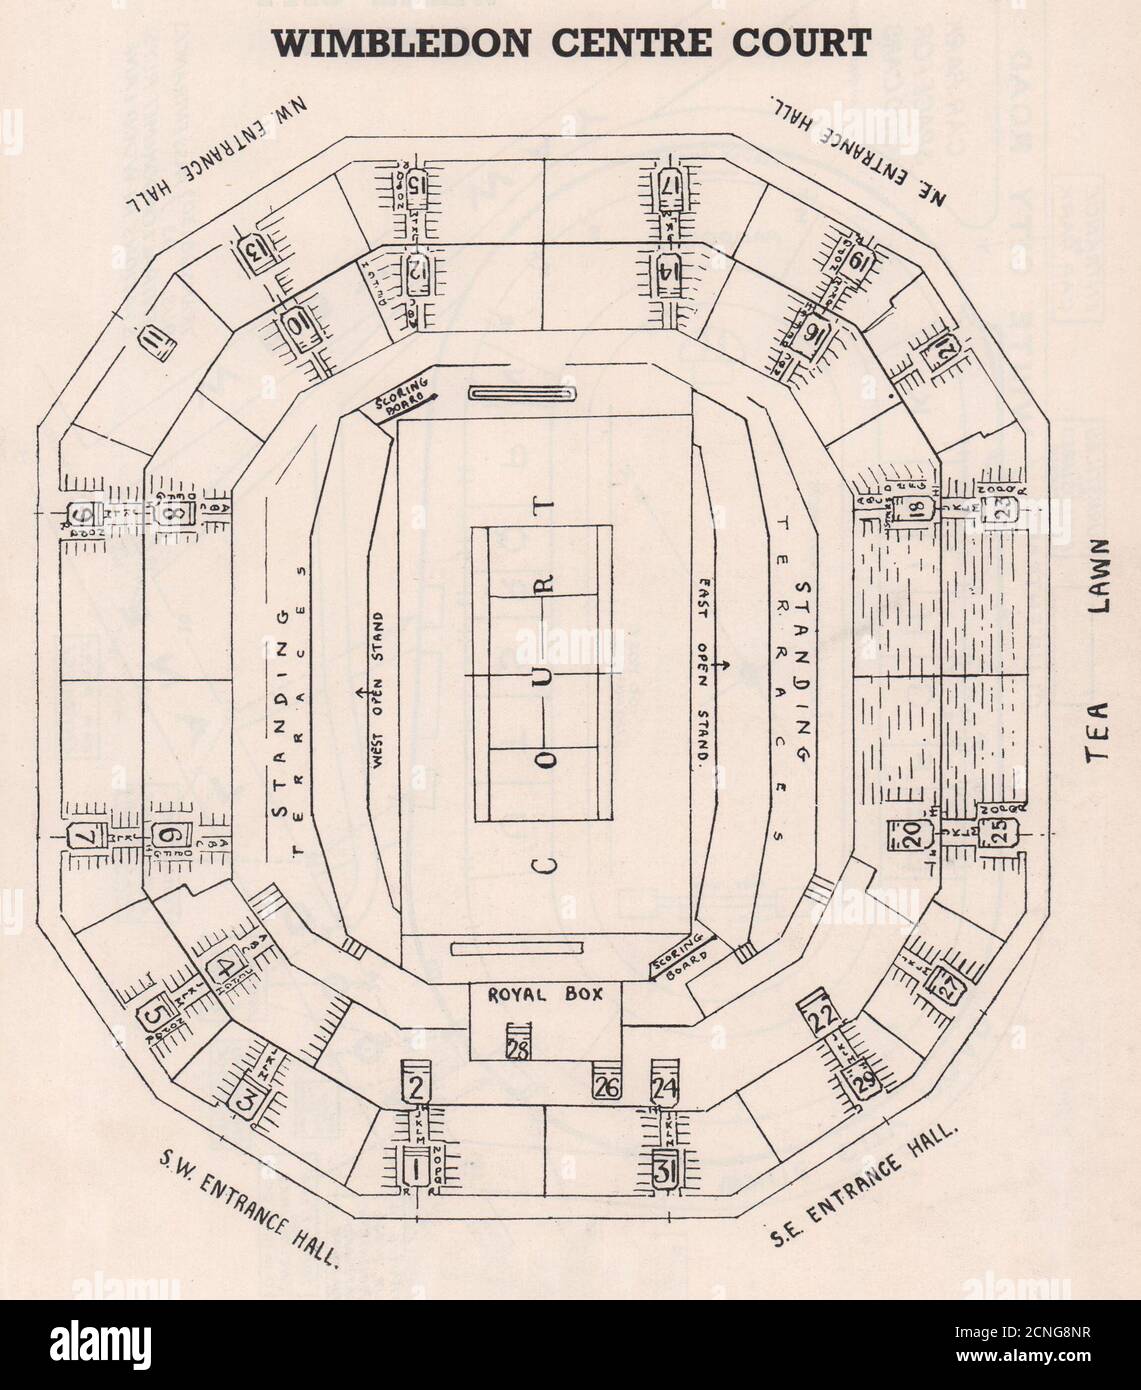 PLAN de siège d'époque DE WIMBLEDON CENTER COURT. Stade de tennis 1937 vieux imprimé Banque D'Images